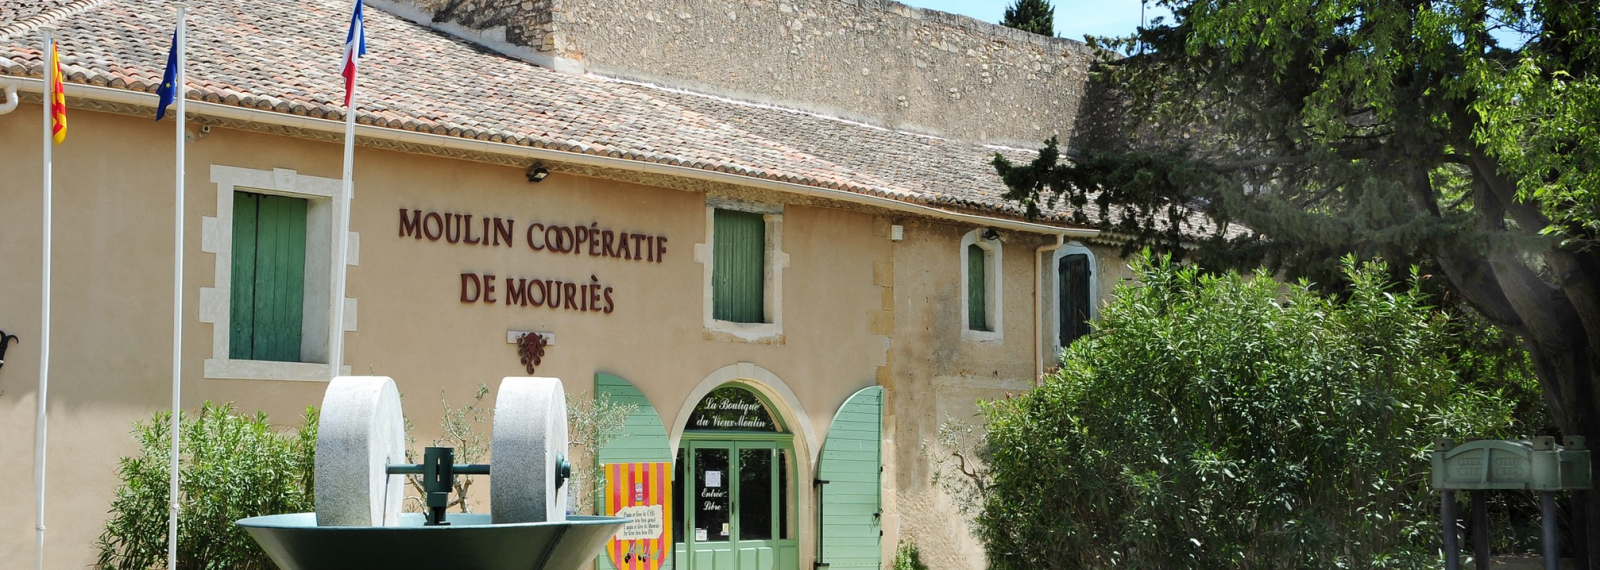 Moulin Coopératif de Mouriès